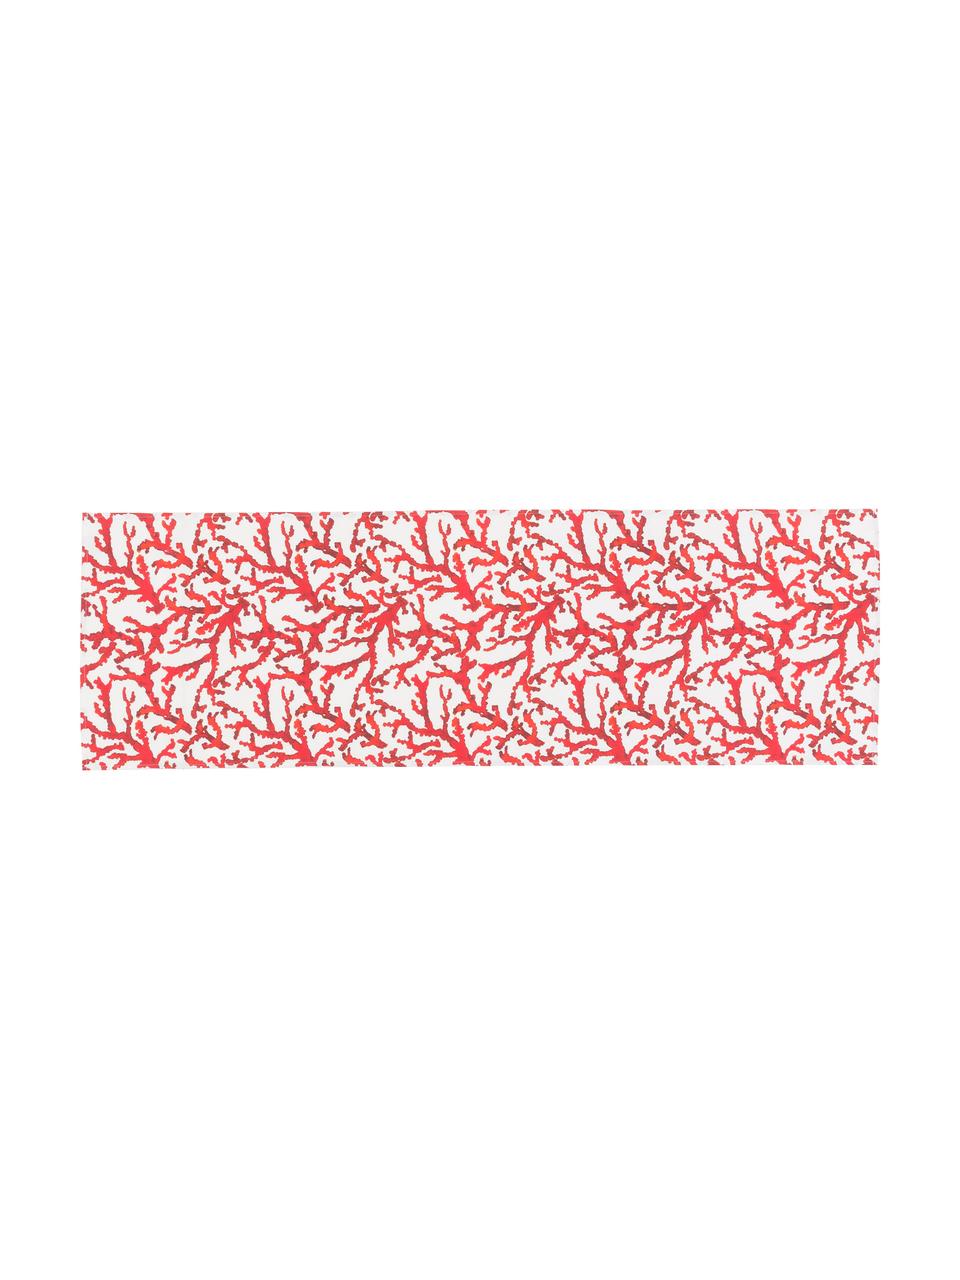 Bieżnik z bawełny Estran, 2 szt., Bawełna, Czerwony, biały, S 50 x D 160 cm